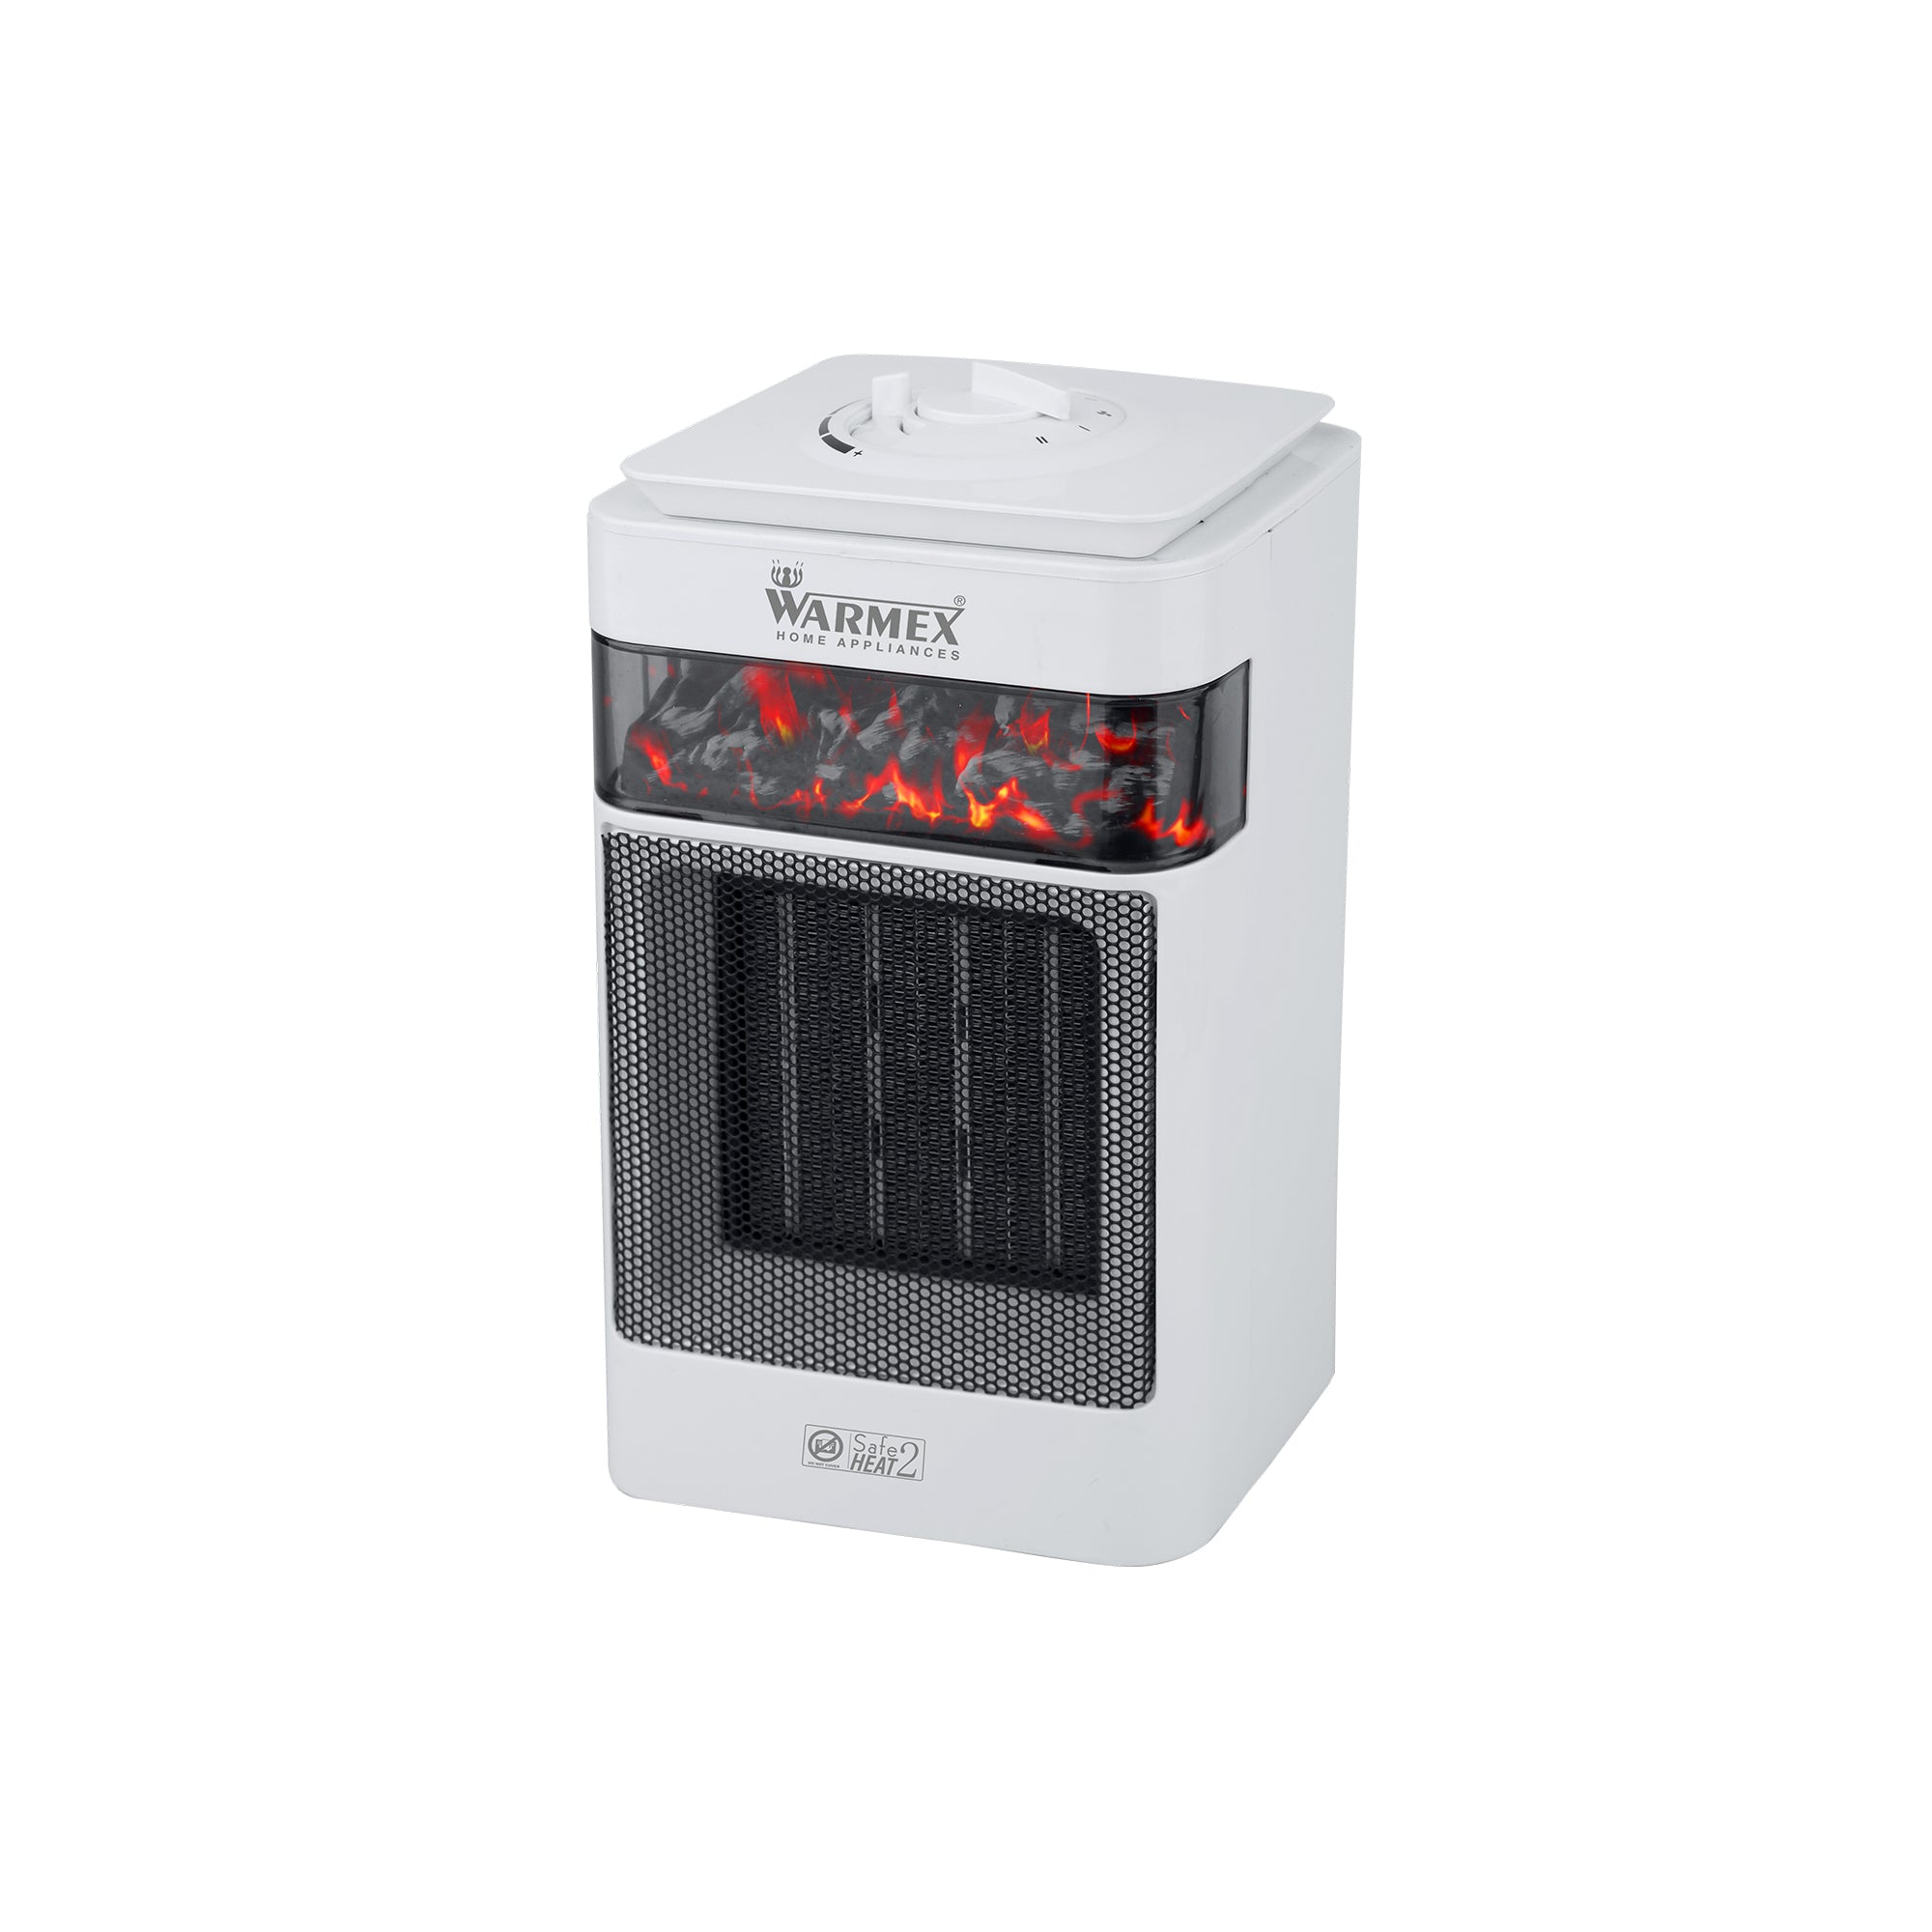 Warmex 750/1500 Watts Room Heater BONFIRE+